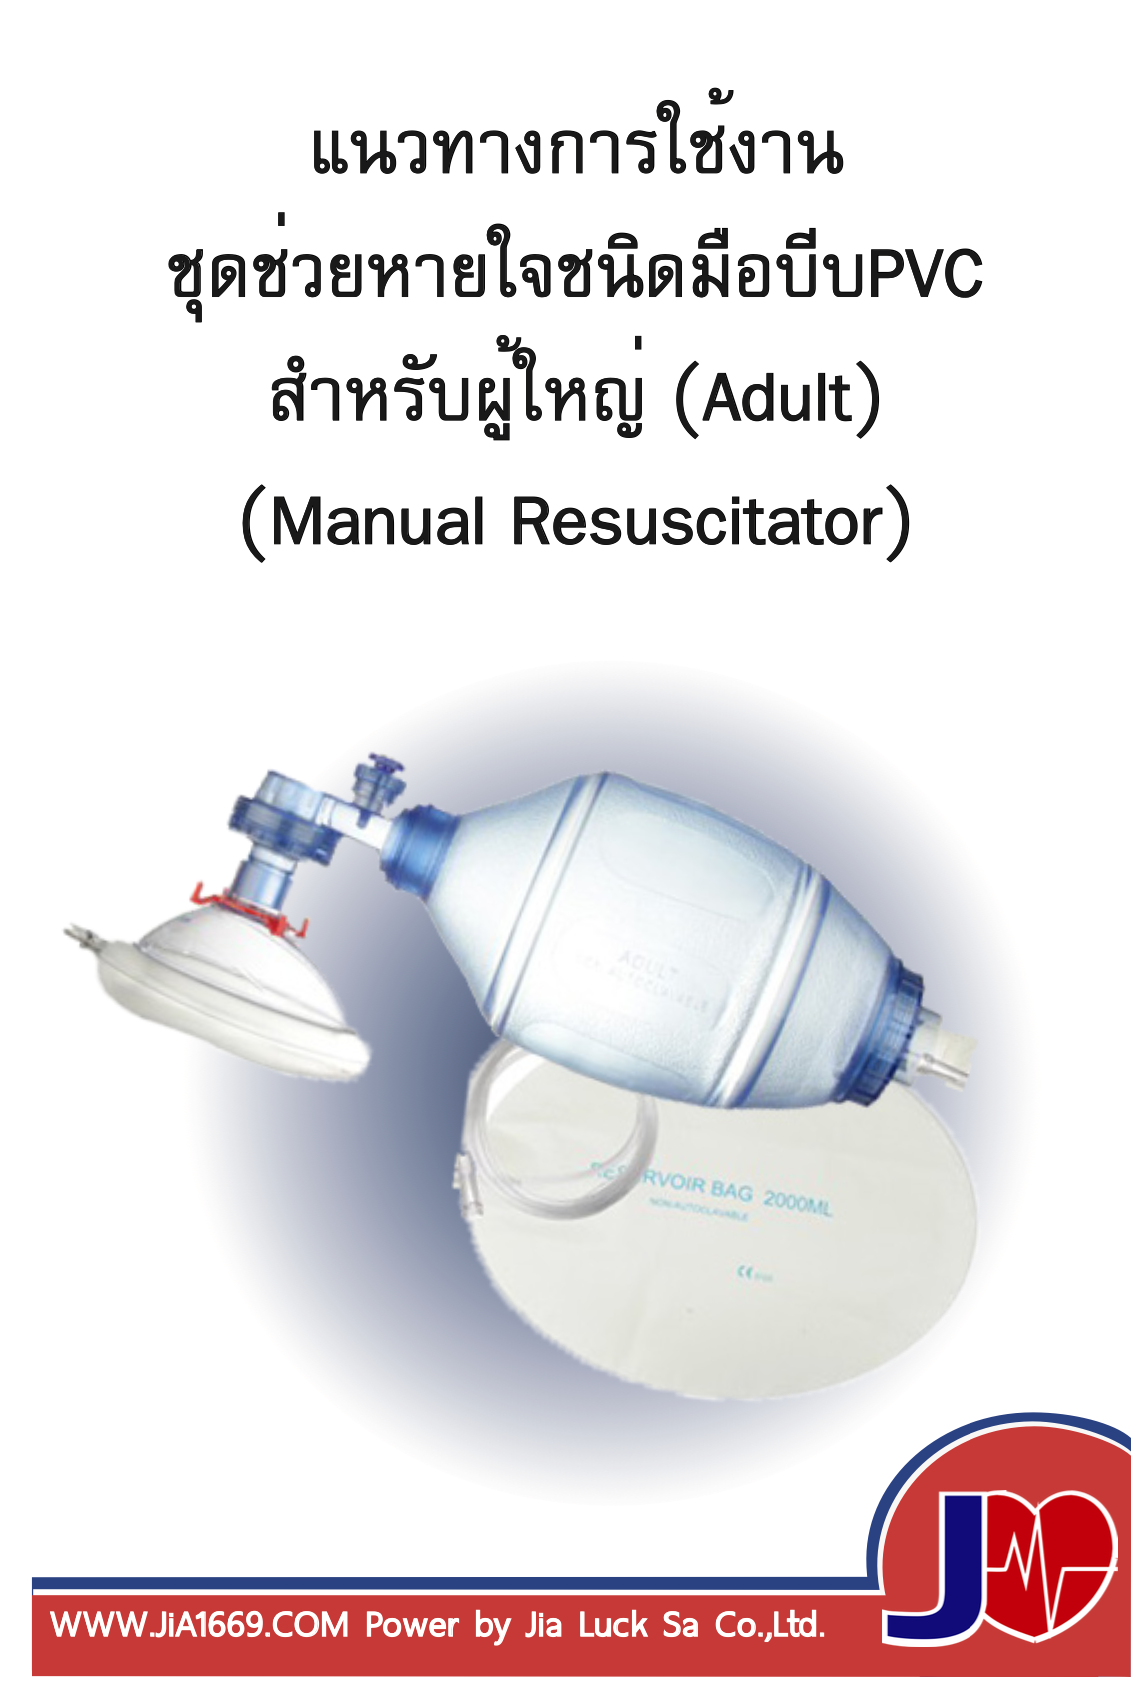 Manual Resuscitator for Adult(PVC)